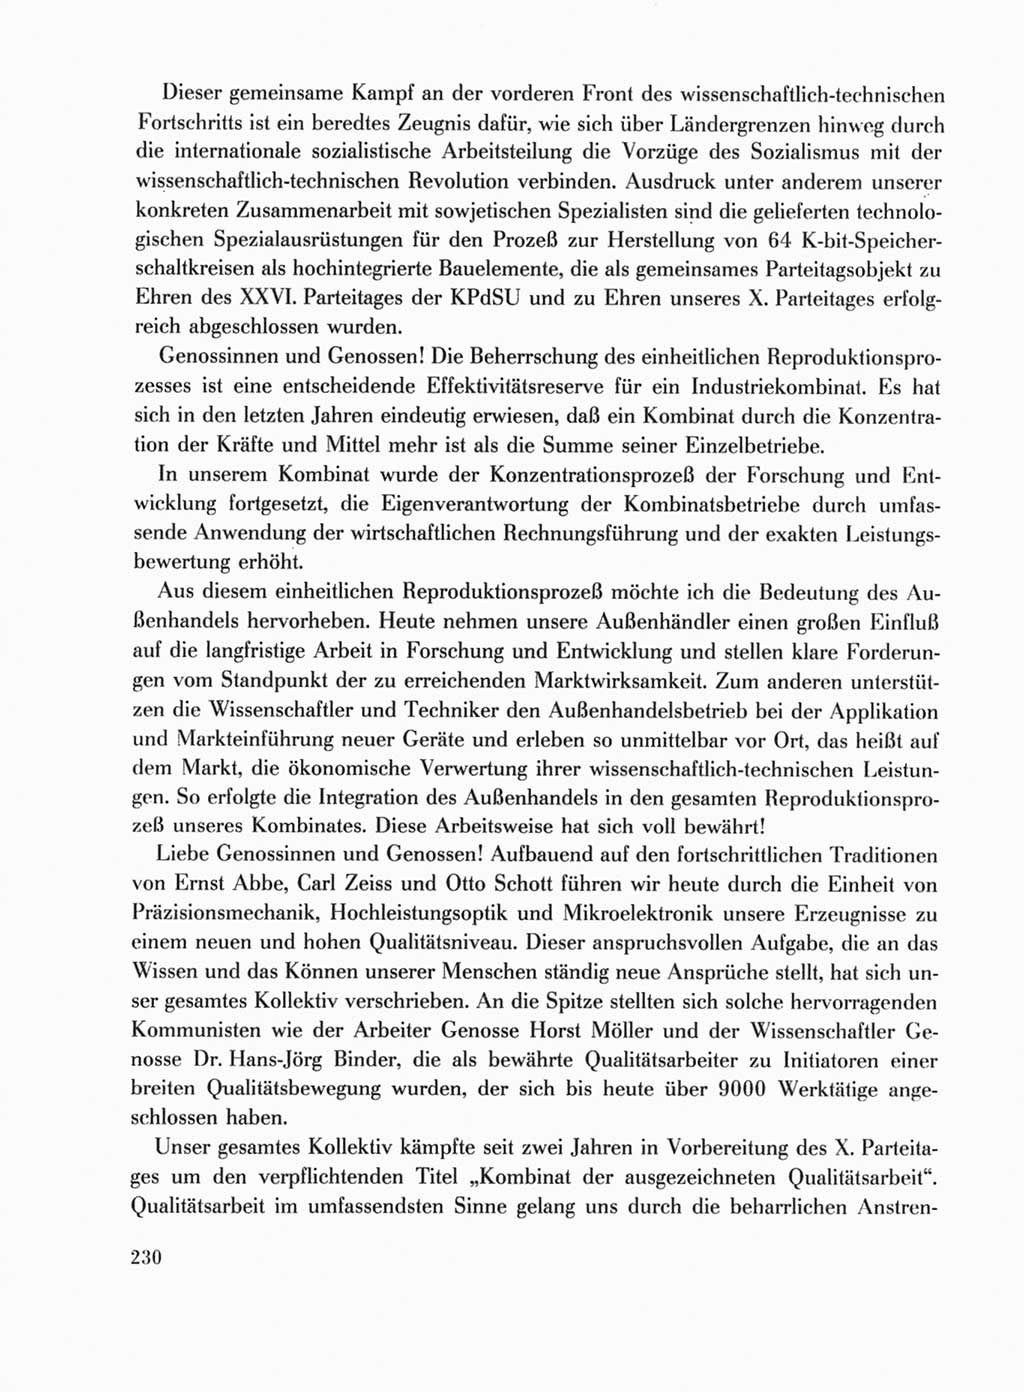 Protokoll der Verhandlungen des Ⅹ. Parteitages der Sozialistischen Einheitspartei Deutschlands (SED) [Deutsche Demokratische Republik (DDR)] 1981, Band 1, Seite 230 (Prot. Verh. Ⅹ. PT SED DDR 1981, Bd. 1, S. 230)